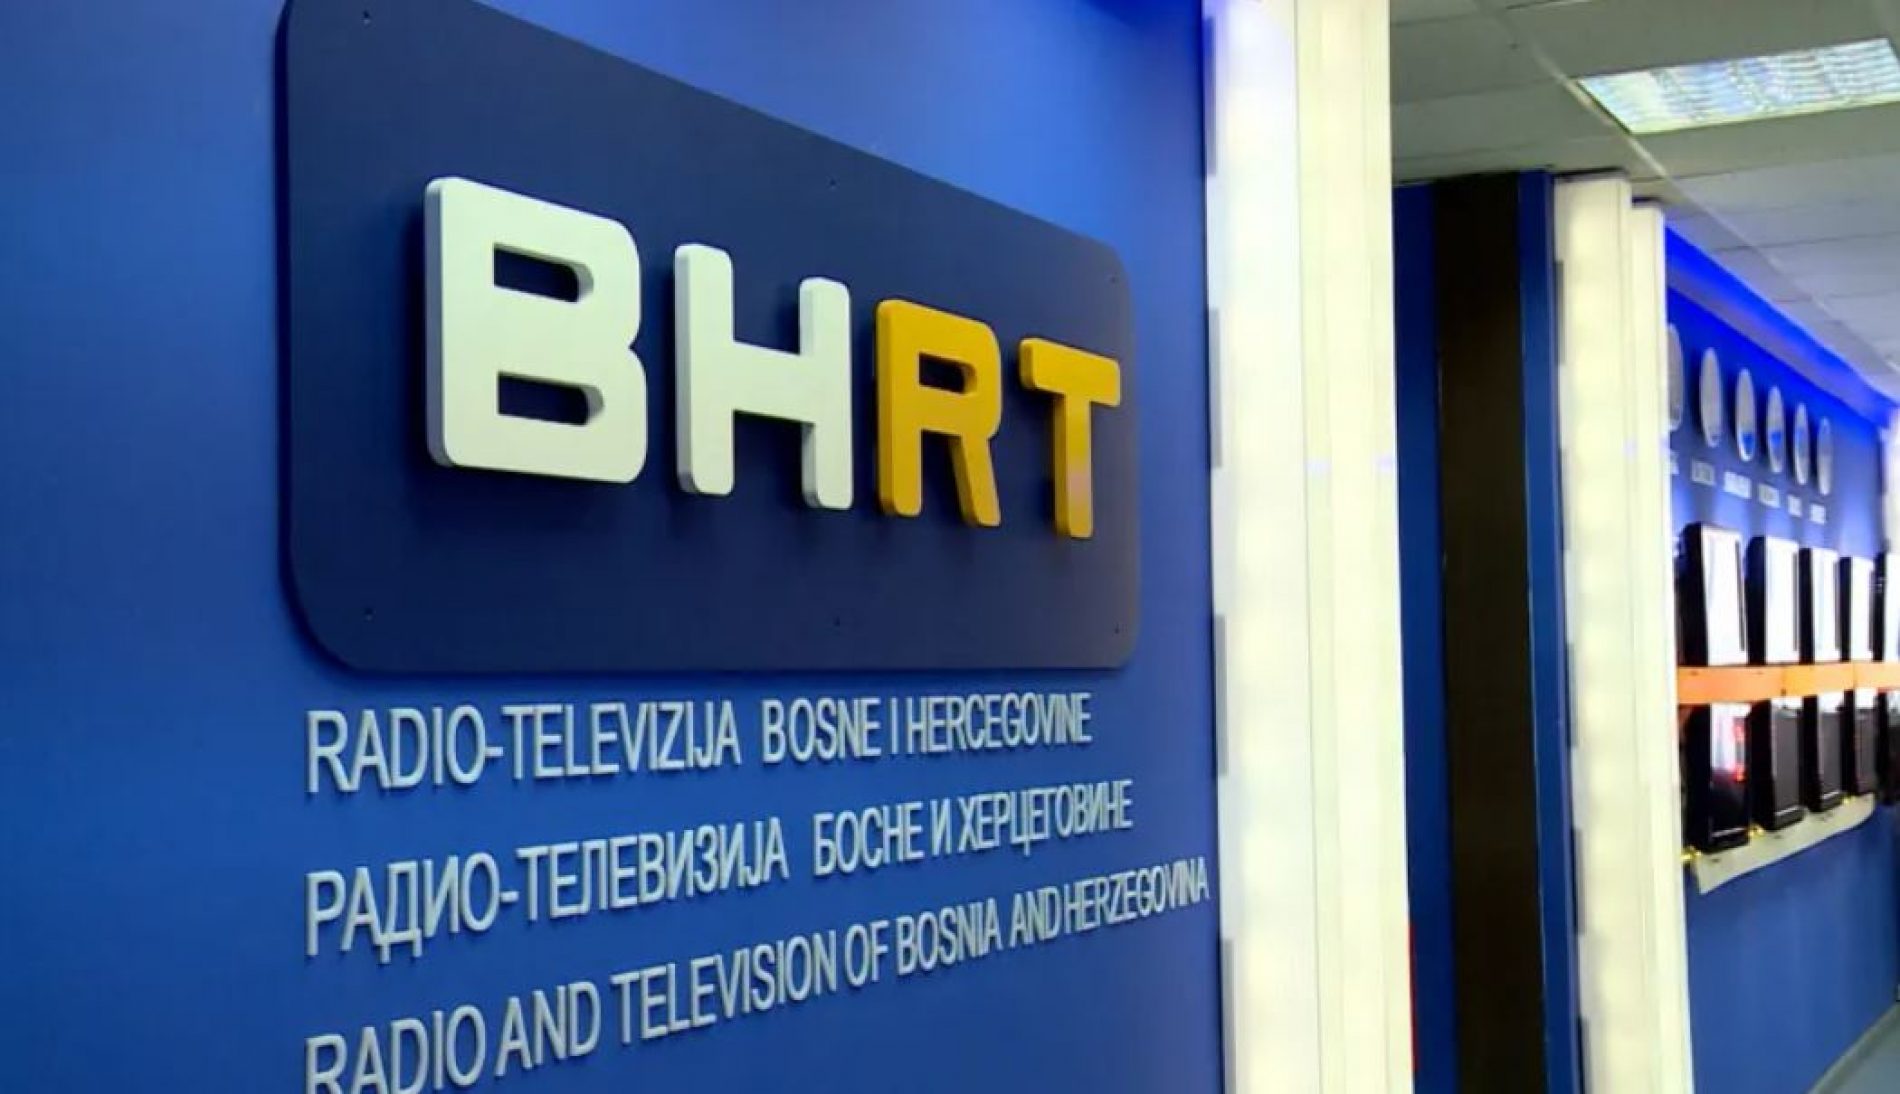 Dug RTRS-a prema BHRT-u prešao 83 miliona KM, BHRT traži pravdu na sudovima